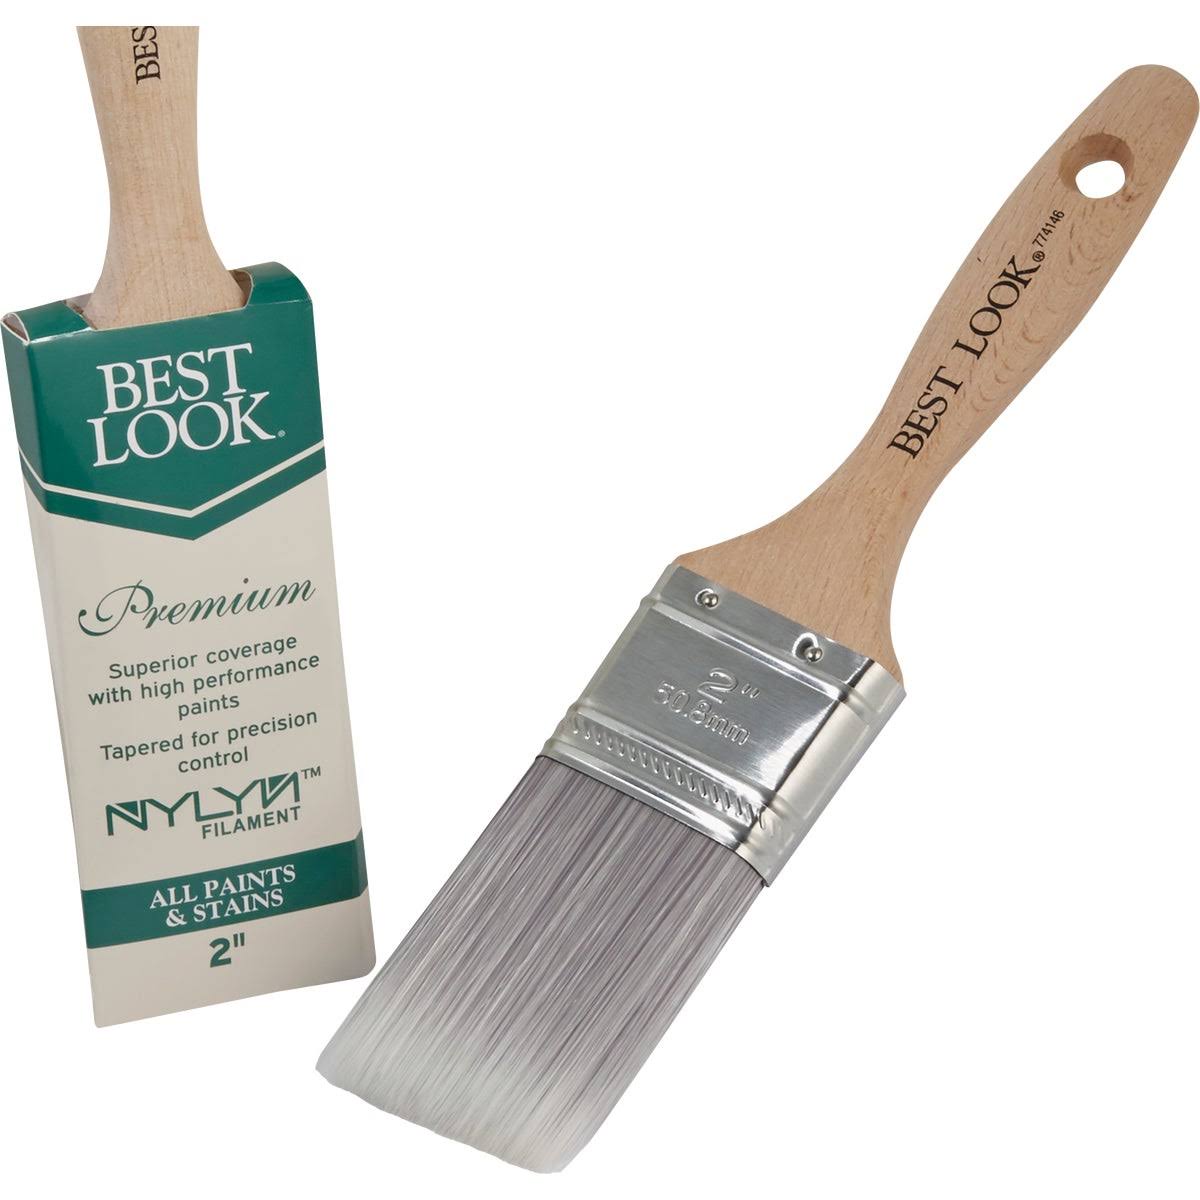 Best Look Premium 2 in. Flat Nylyn Paint Brush 774146